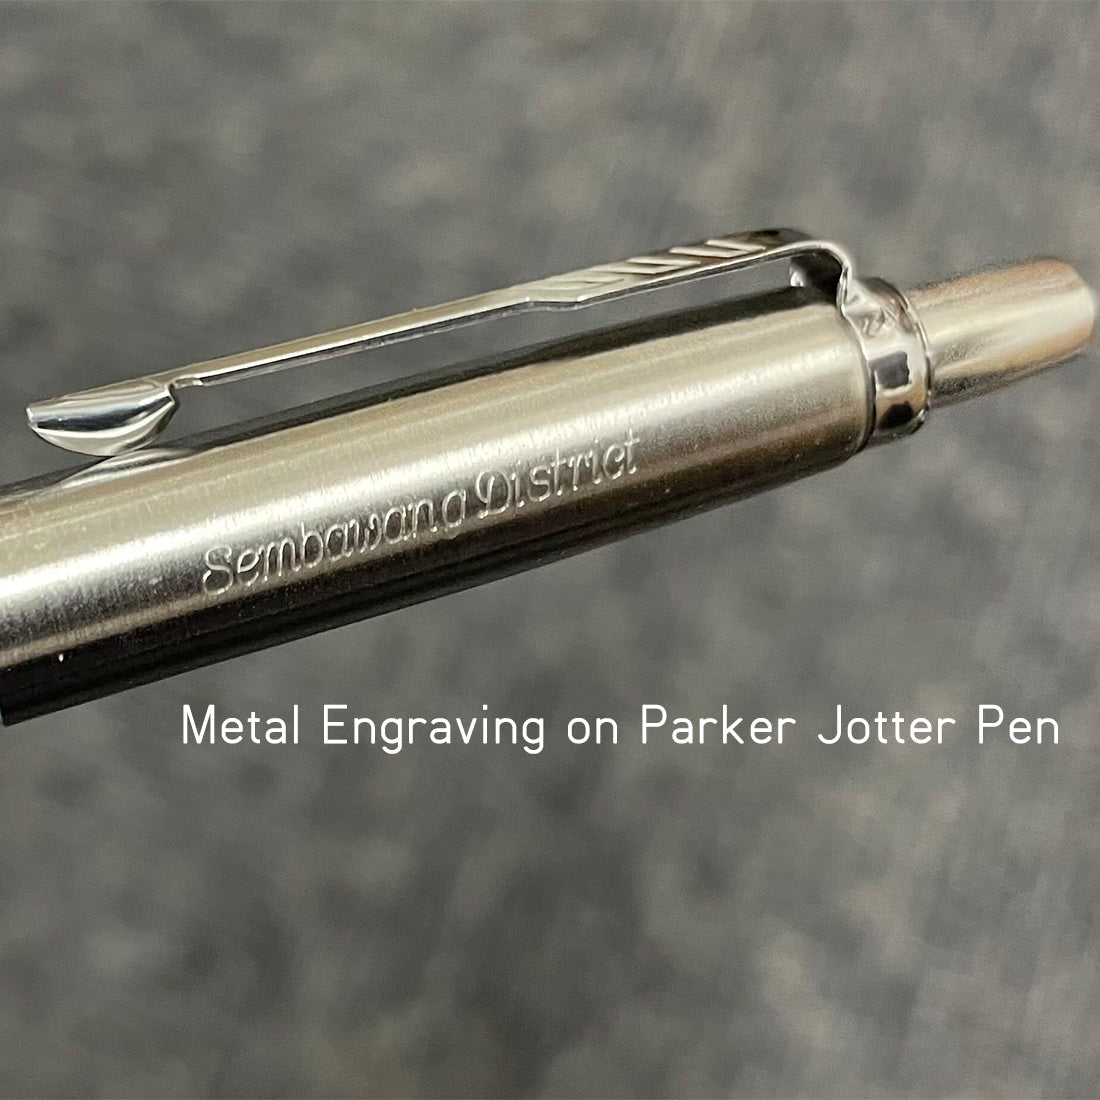 パーカー ジョッター XL モノクローム ステンレススチール ボールペン